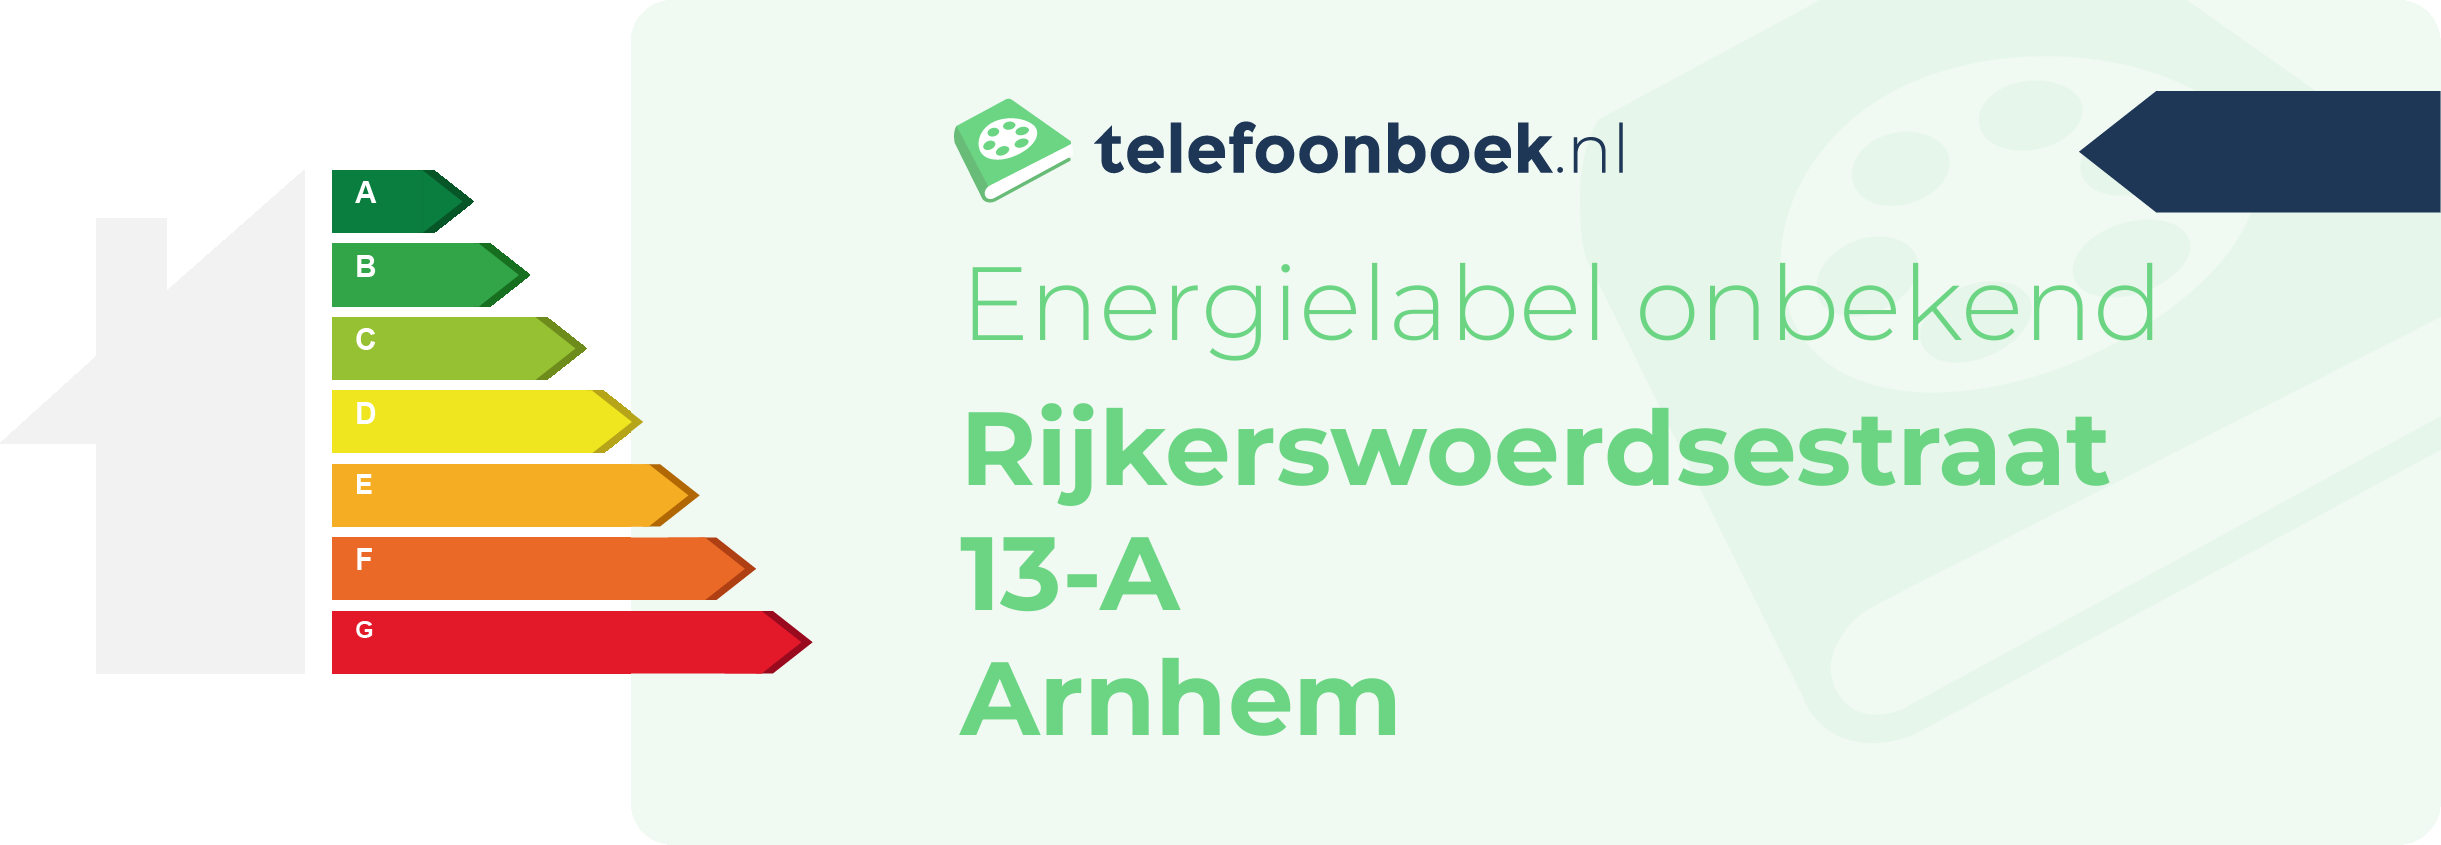 Energielabel Rijkerswoerdsestraat 13-A Arnhem